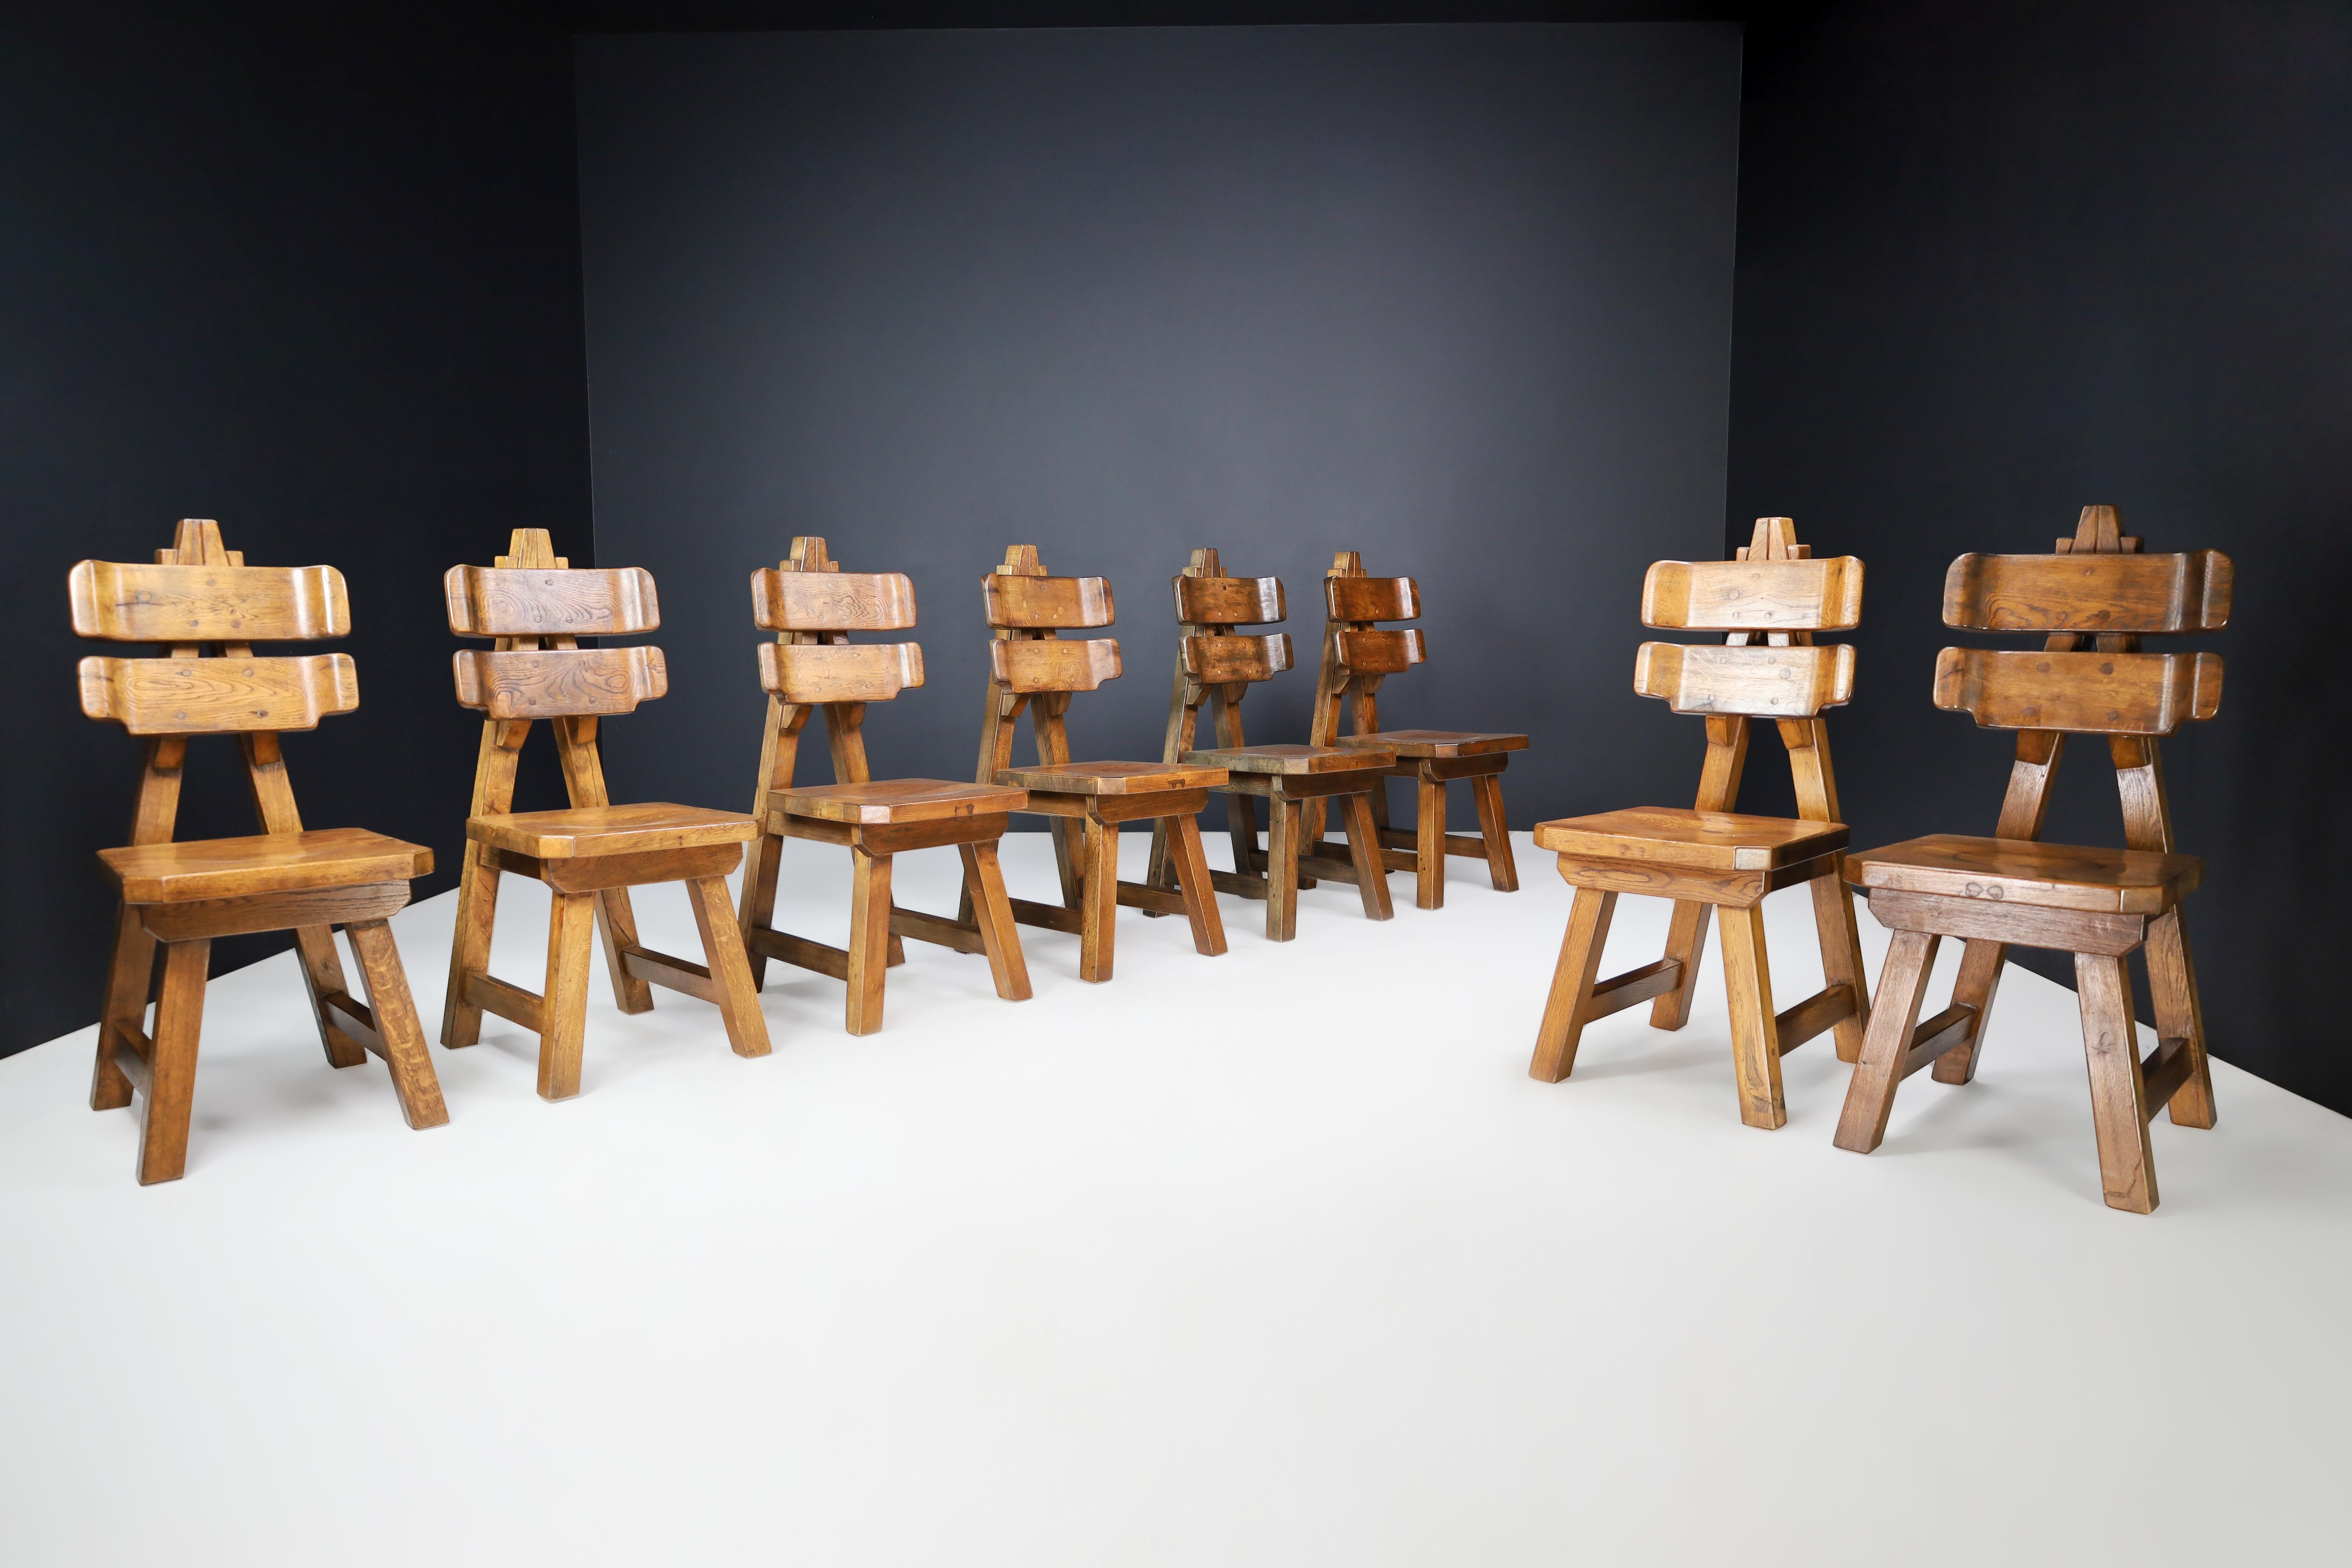 Skulpturaler Satz von acht brutalistischen Esszimmerstühlen aus massiver Eiche, Frankreich, 1960er Jahre

Diese acht Esszimmerstühle sind ein seltener Fund aus Frankreich, hergestellt in den späten 1960er Jahren. Das Design zeichnet sich durch die